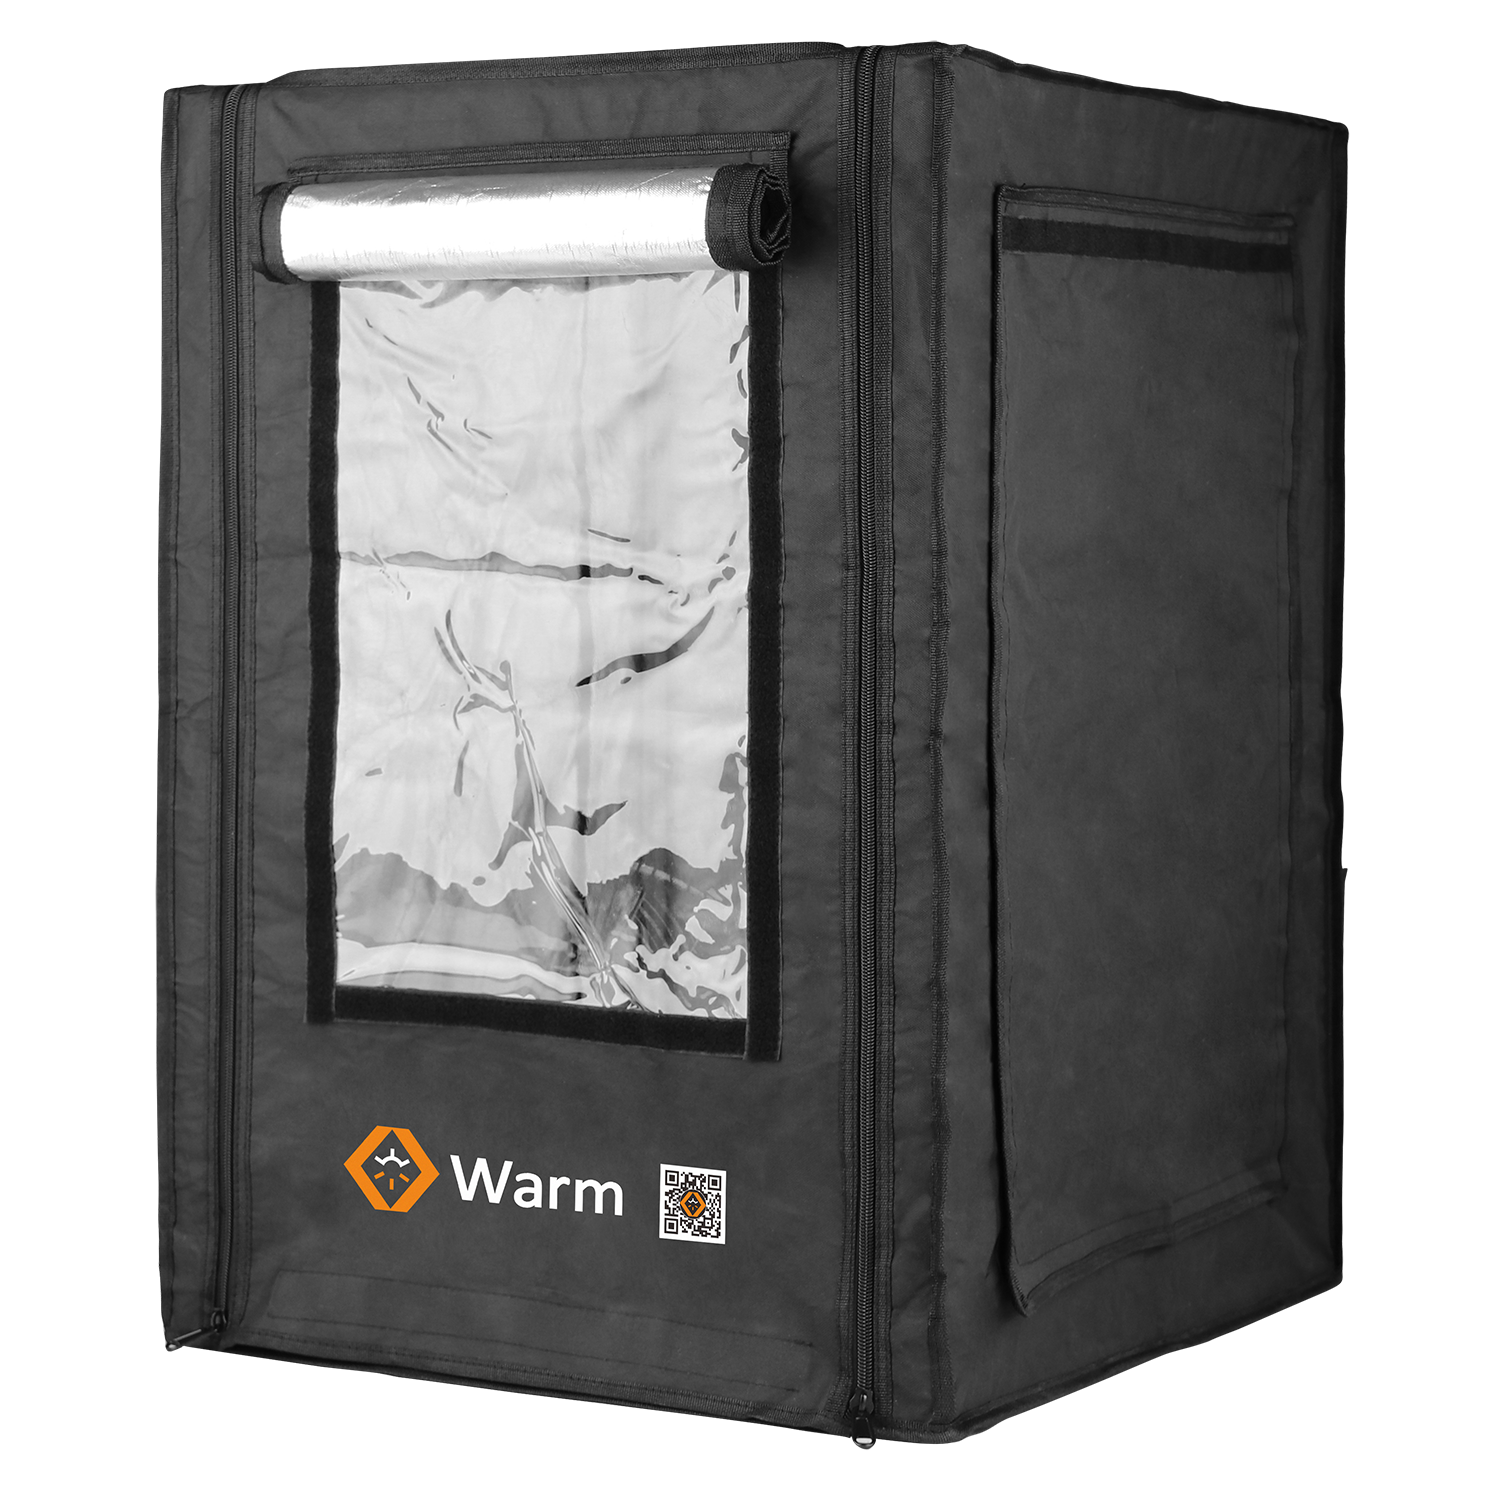 Vỏ máy in 3D Pro, Giữ ấm, Chống cháy, Bảo hiểm đầy đủ và Studio, Warm Pro
